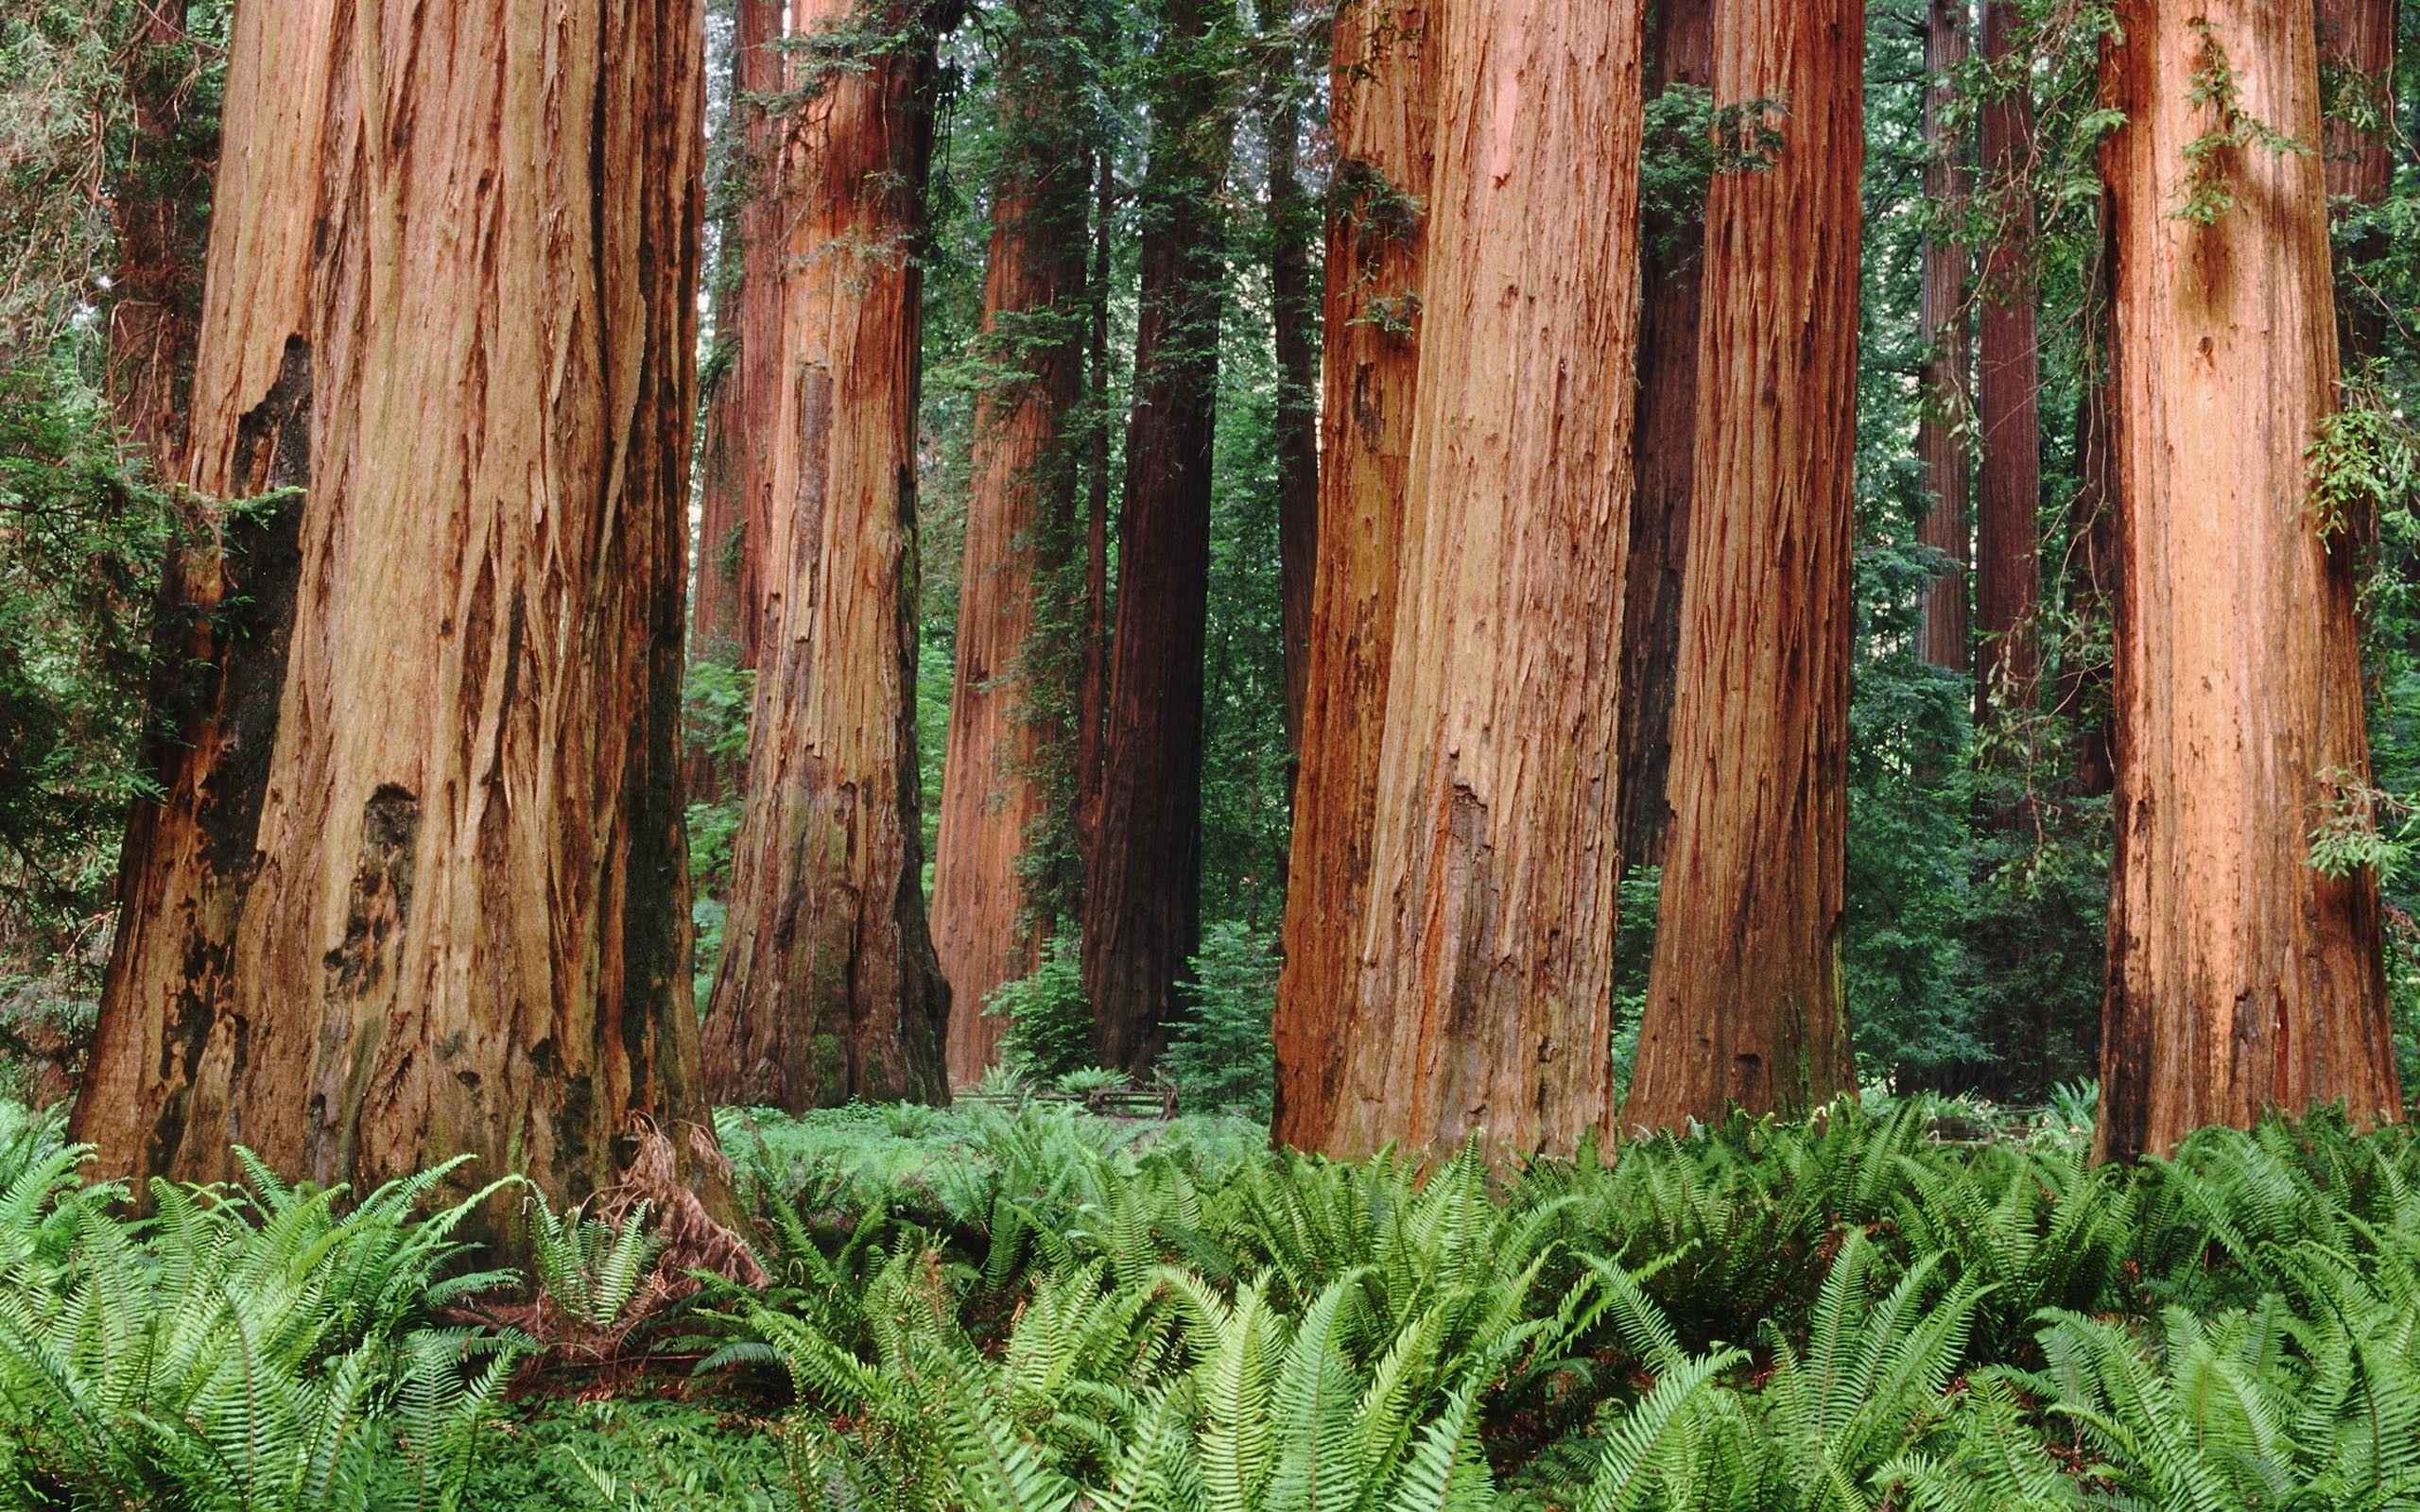 Redwood Desktop Wallpapers - Top Free Redwood Desktop Backgrounds